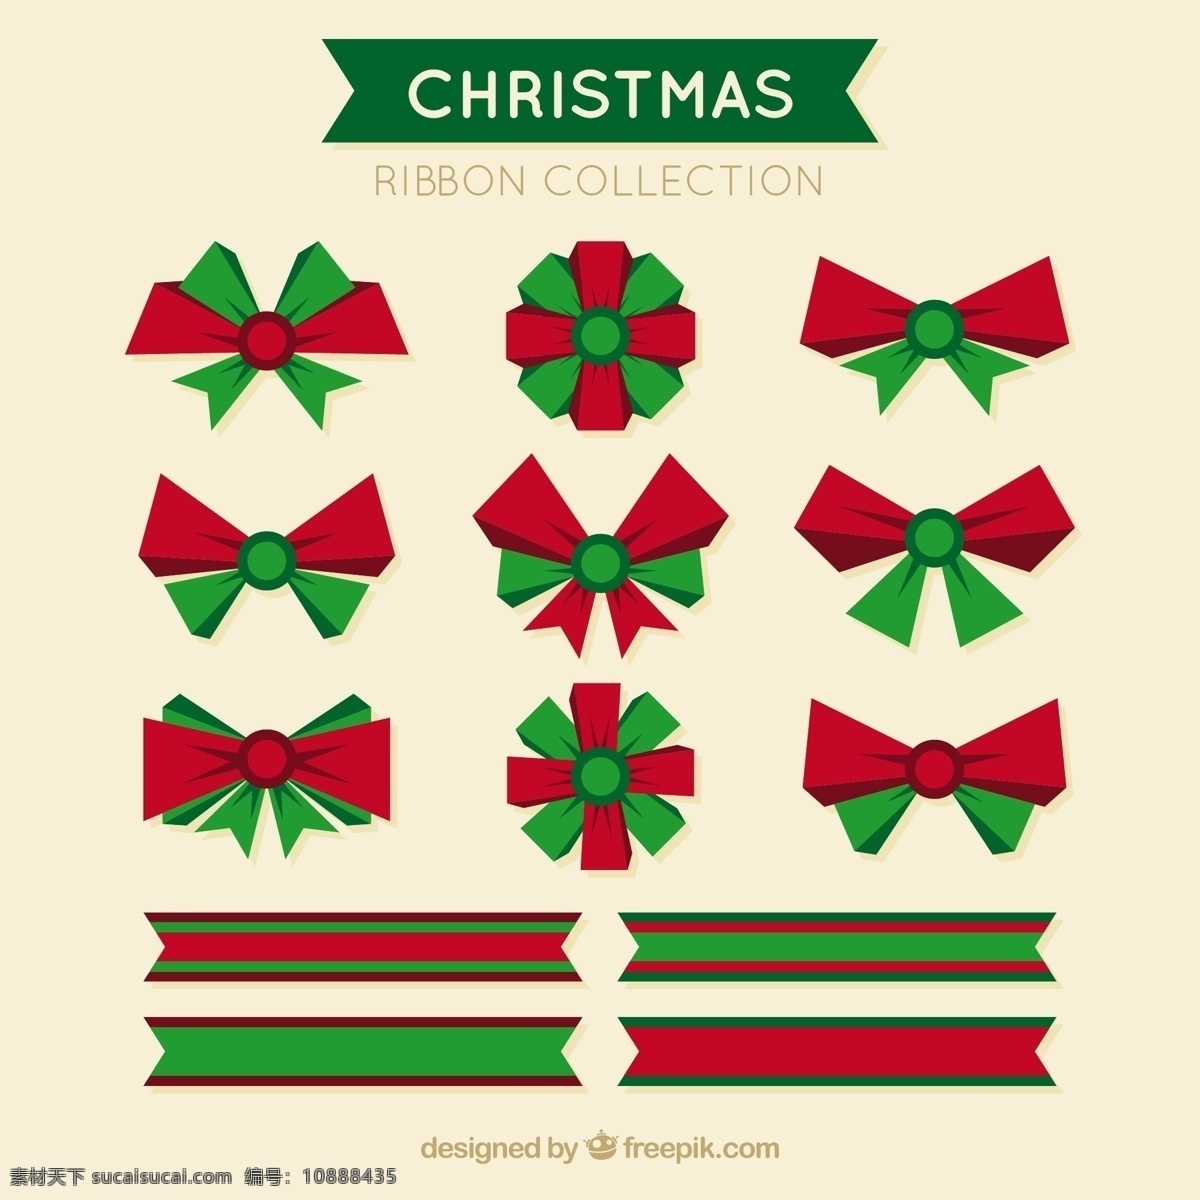 红色 绿色 蝴蝶结 带 条 圣诞 色带 丝带 圣诞节 家庭 新年 圣诞快乐 冬天 扁平 缎带 新装修 平面设计 装饰 年文化 冷